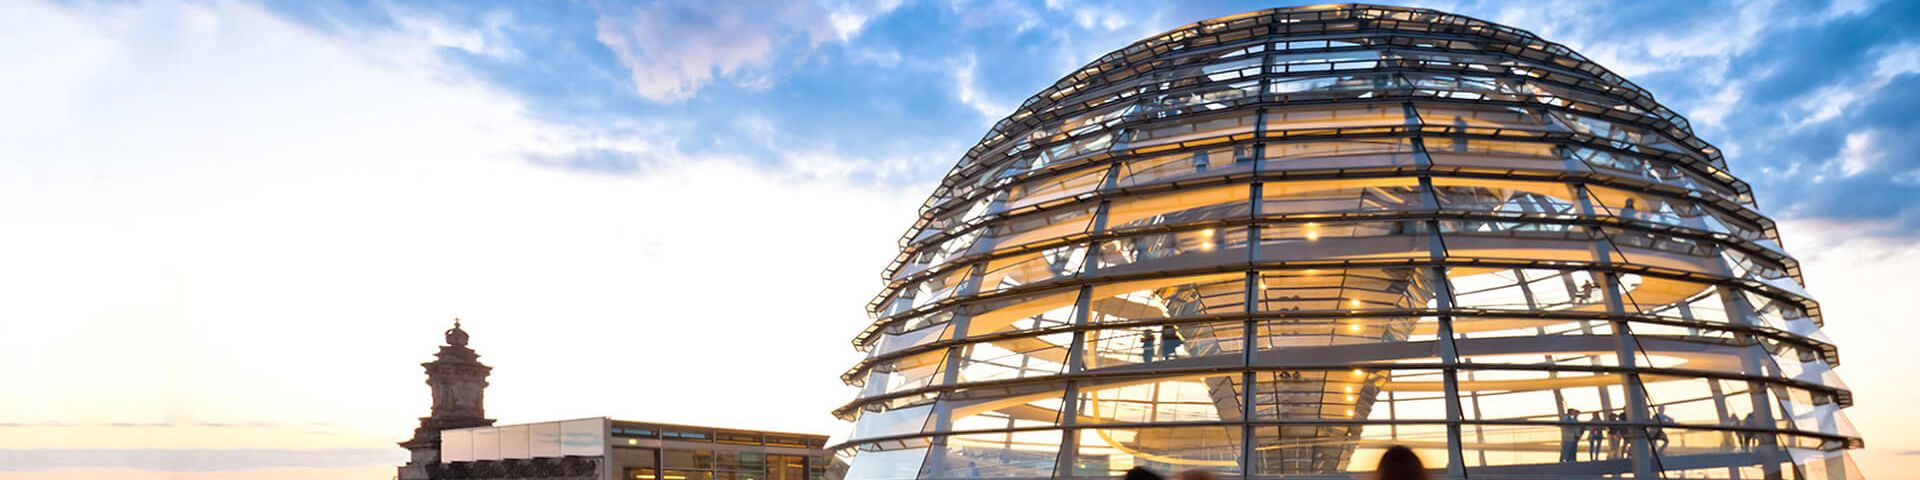 Lösung OZG Umsetzung: Die Reichstagsglaskuppel in den Wolken von Berlin, davor gehen Menschen